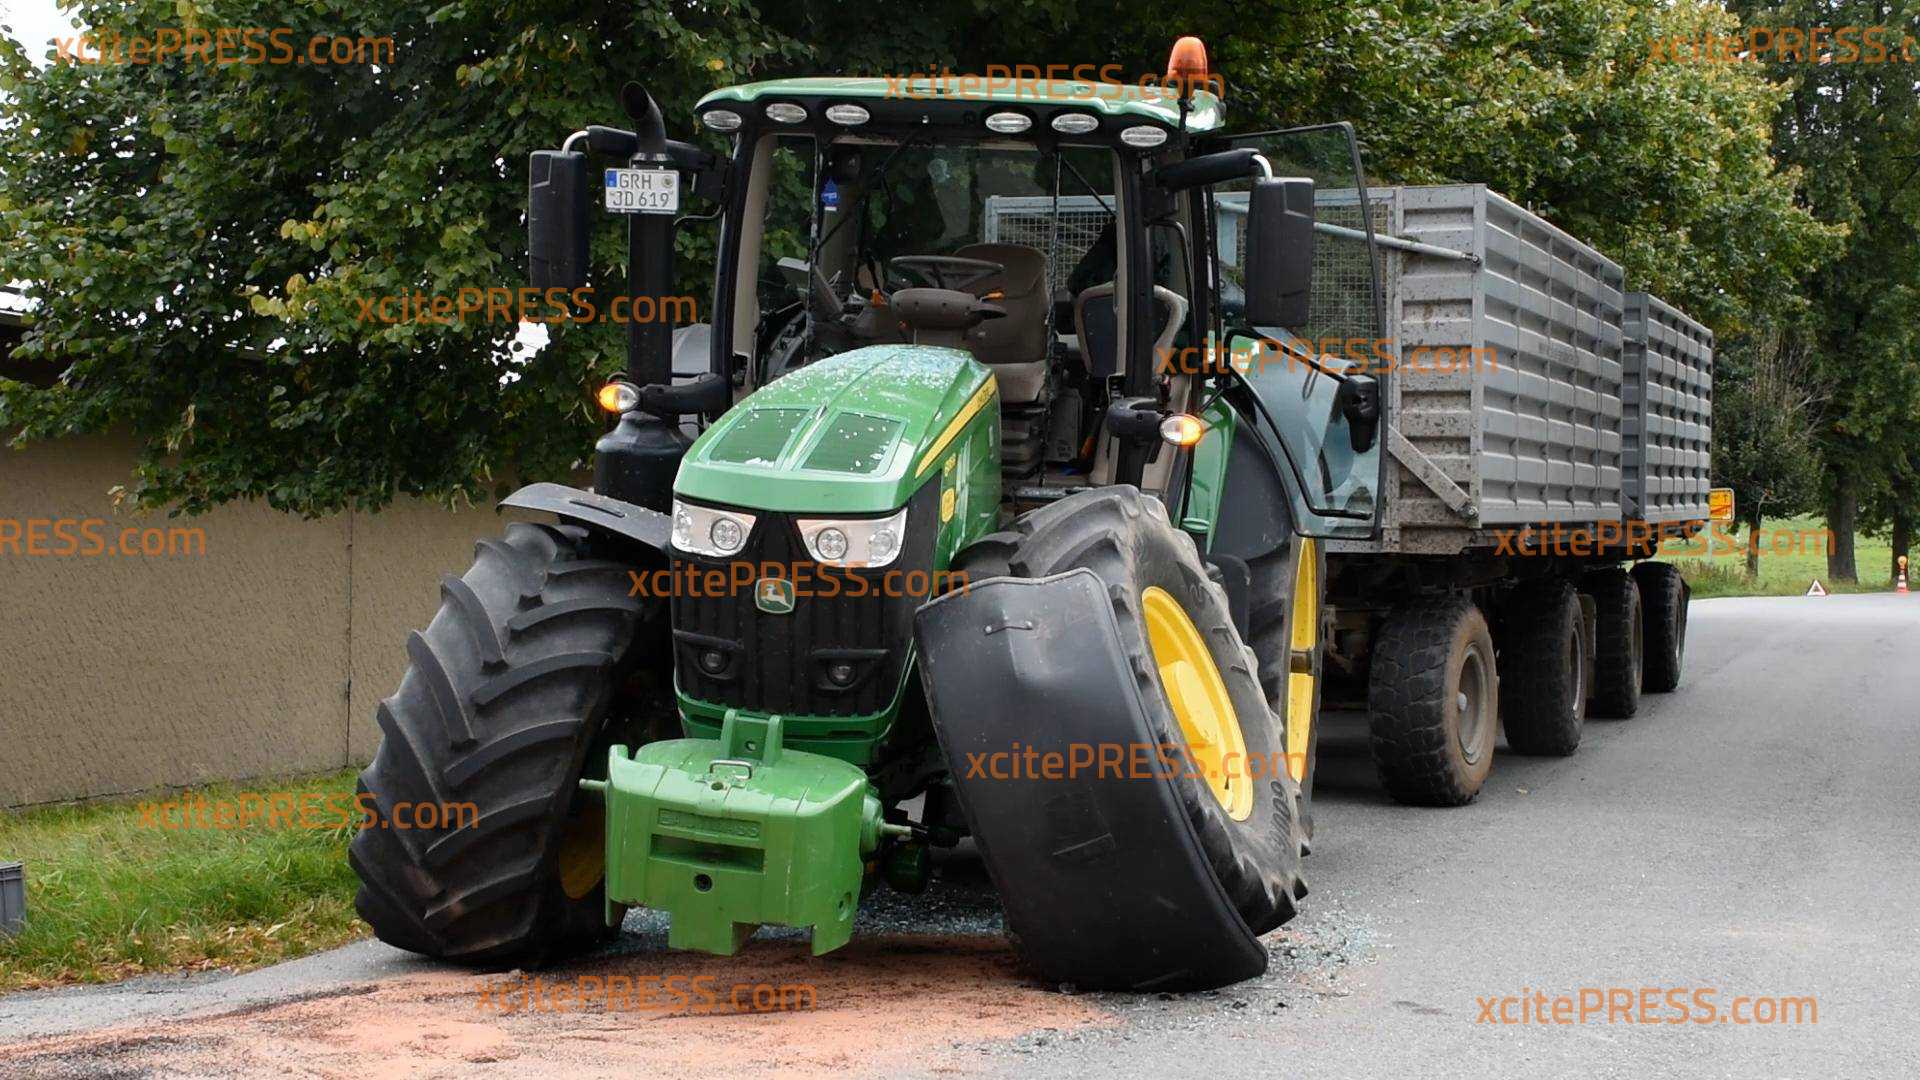 Verkehrsunfall zwischen Traktor und Elektroauto: Zwei Verletzte nach Frontalcrash